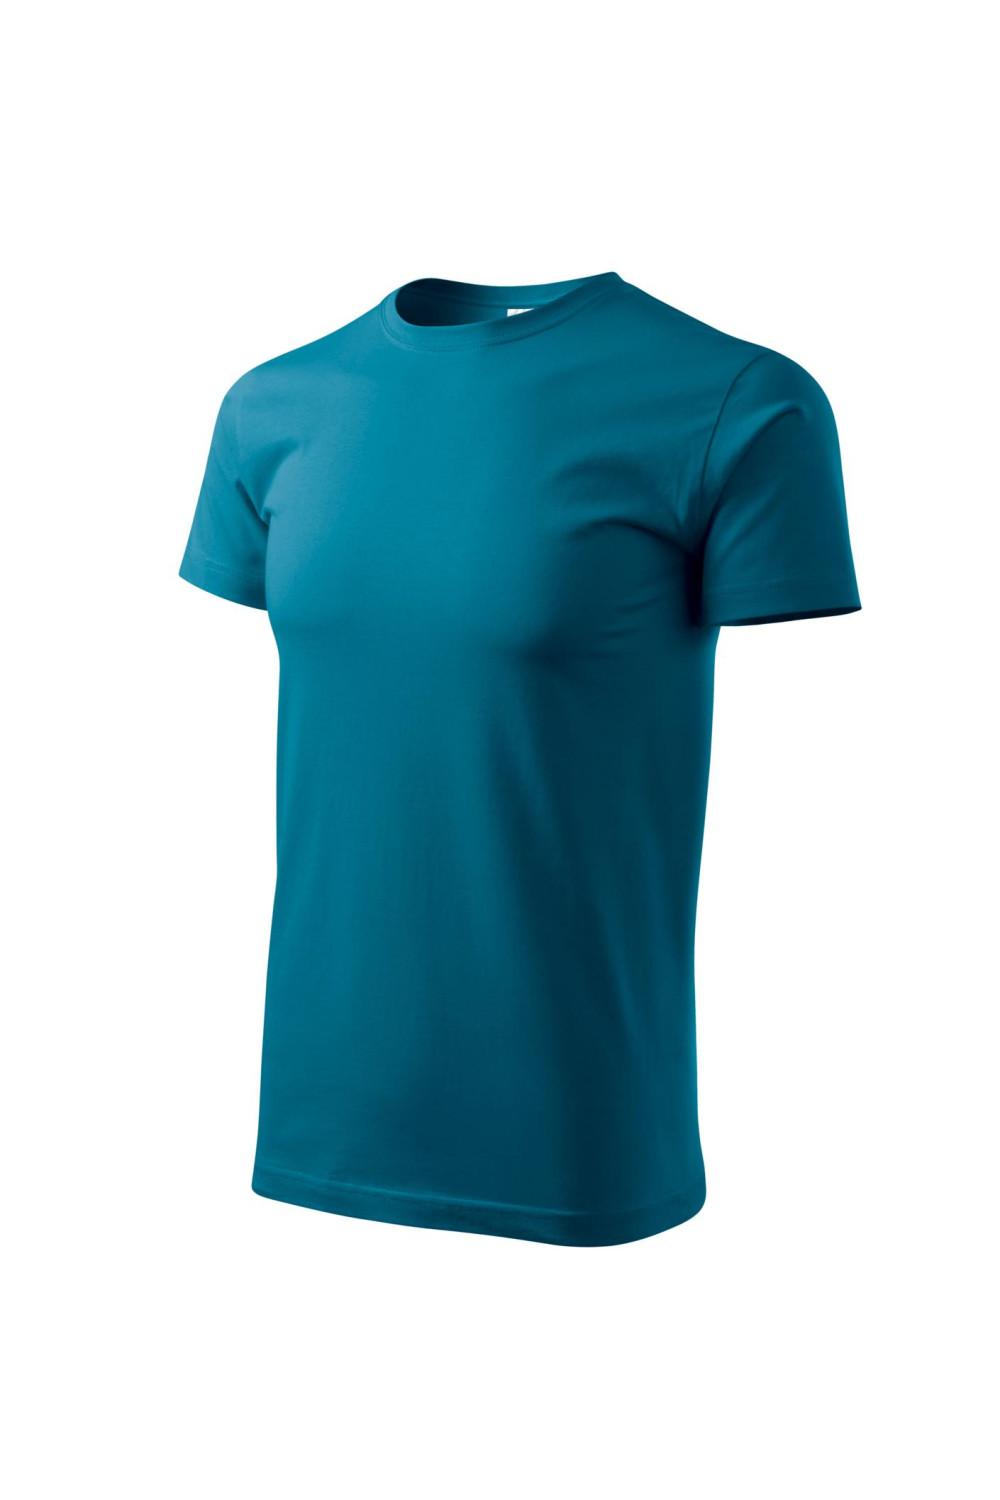 Koszulka męska 100% bawełna BASIC 129  kolor petrol blue